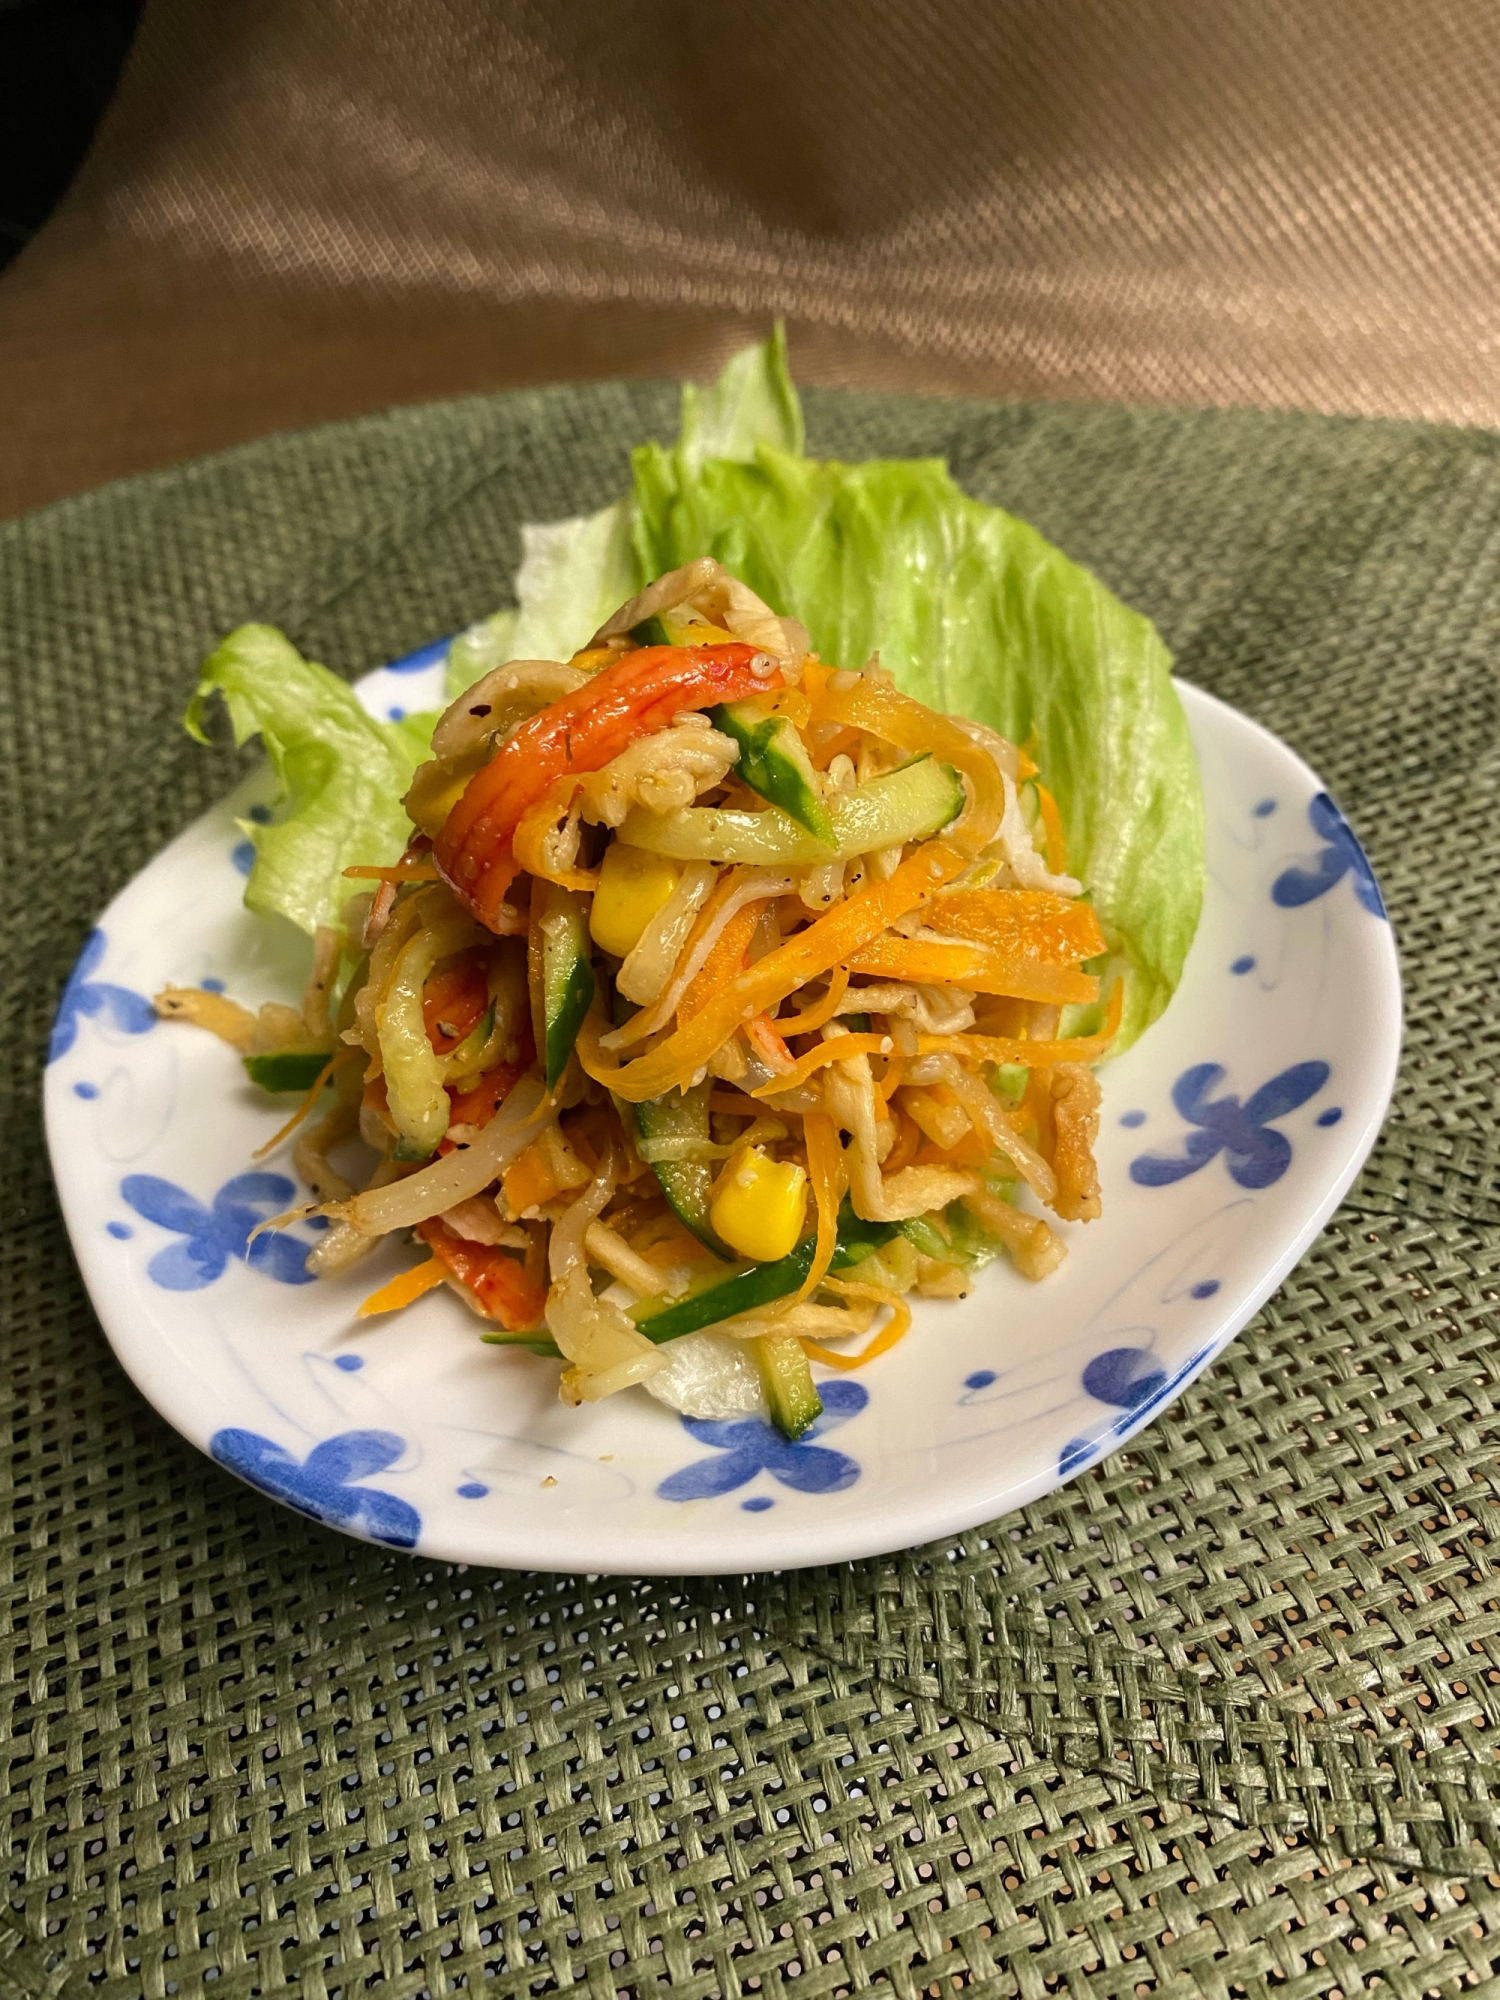 パリパリ食感❣️切り干し大根とカニカマの中華サラダ